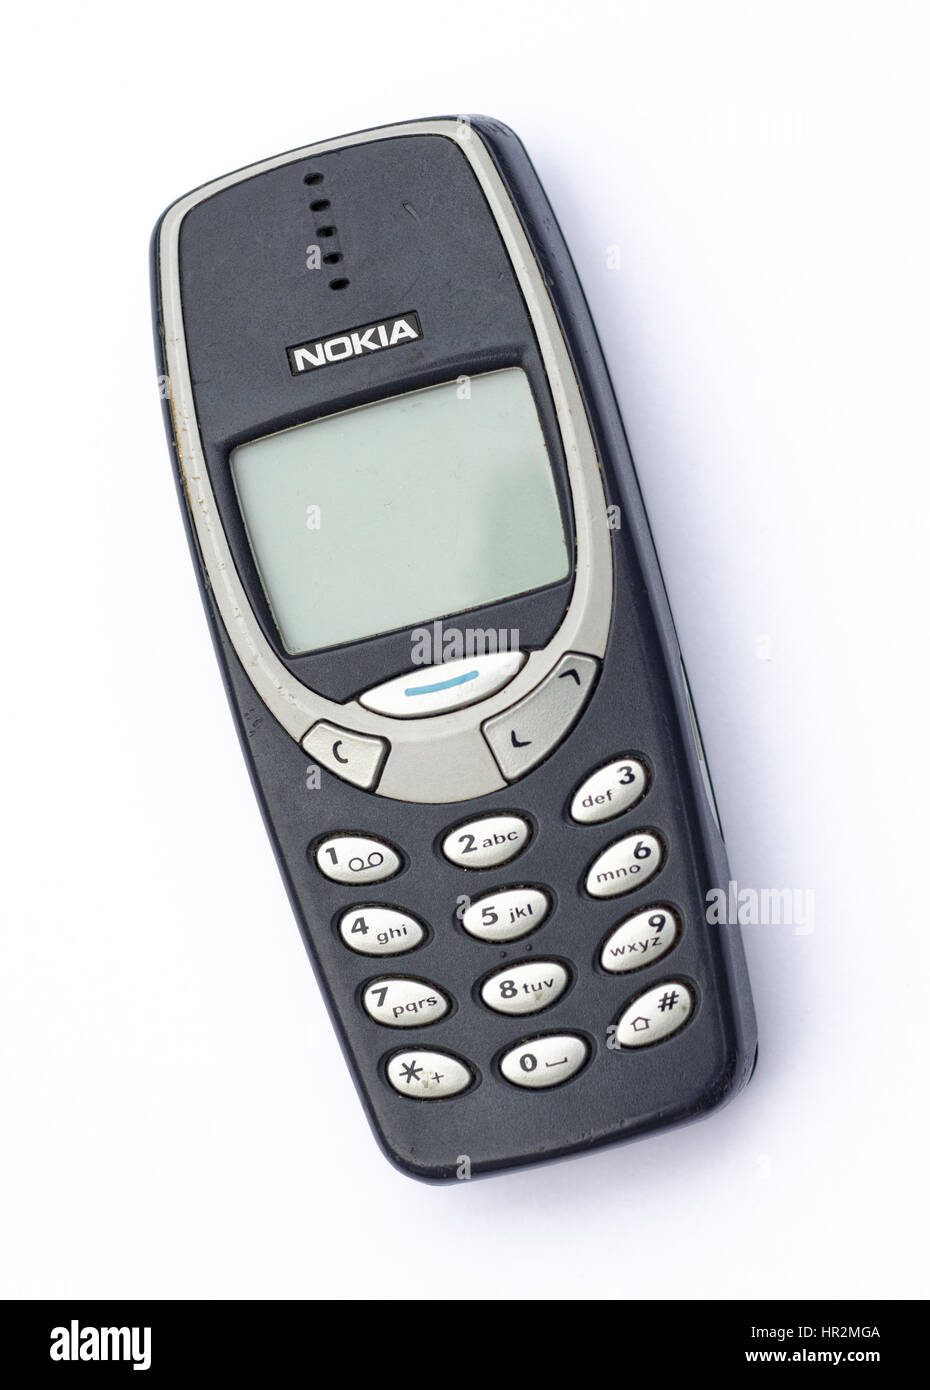 Nokia 3310 Banque de photographies et d'images à haute résolution - Alamy